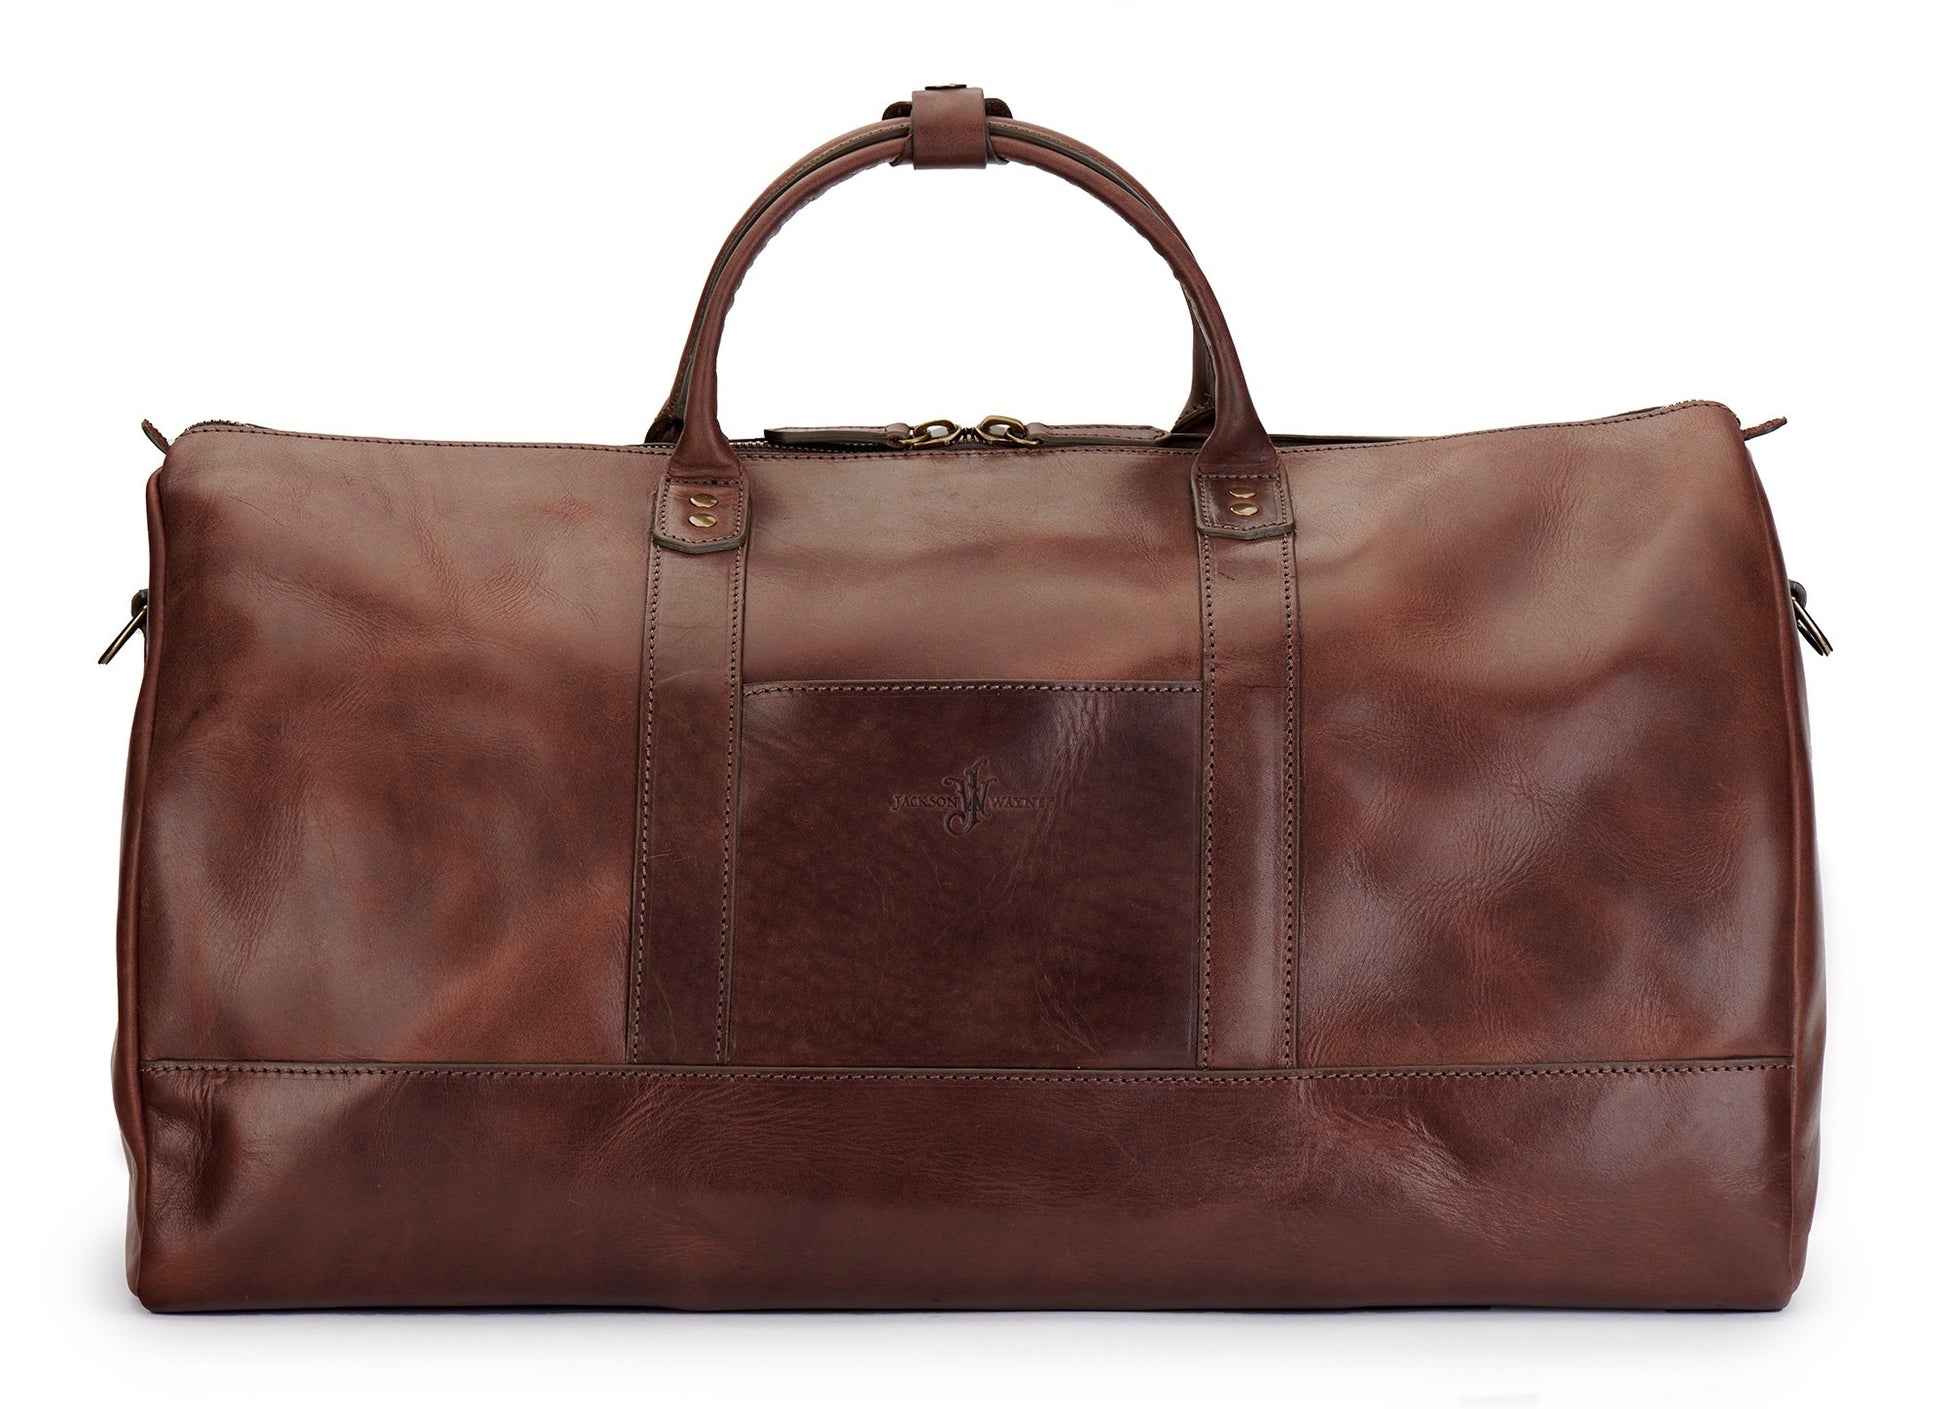 back of full grain leather weekender bag in vintage brown color by Jackson Wayne 